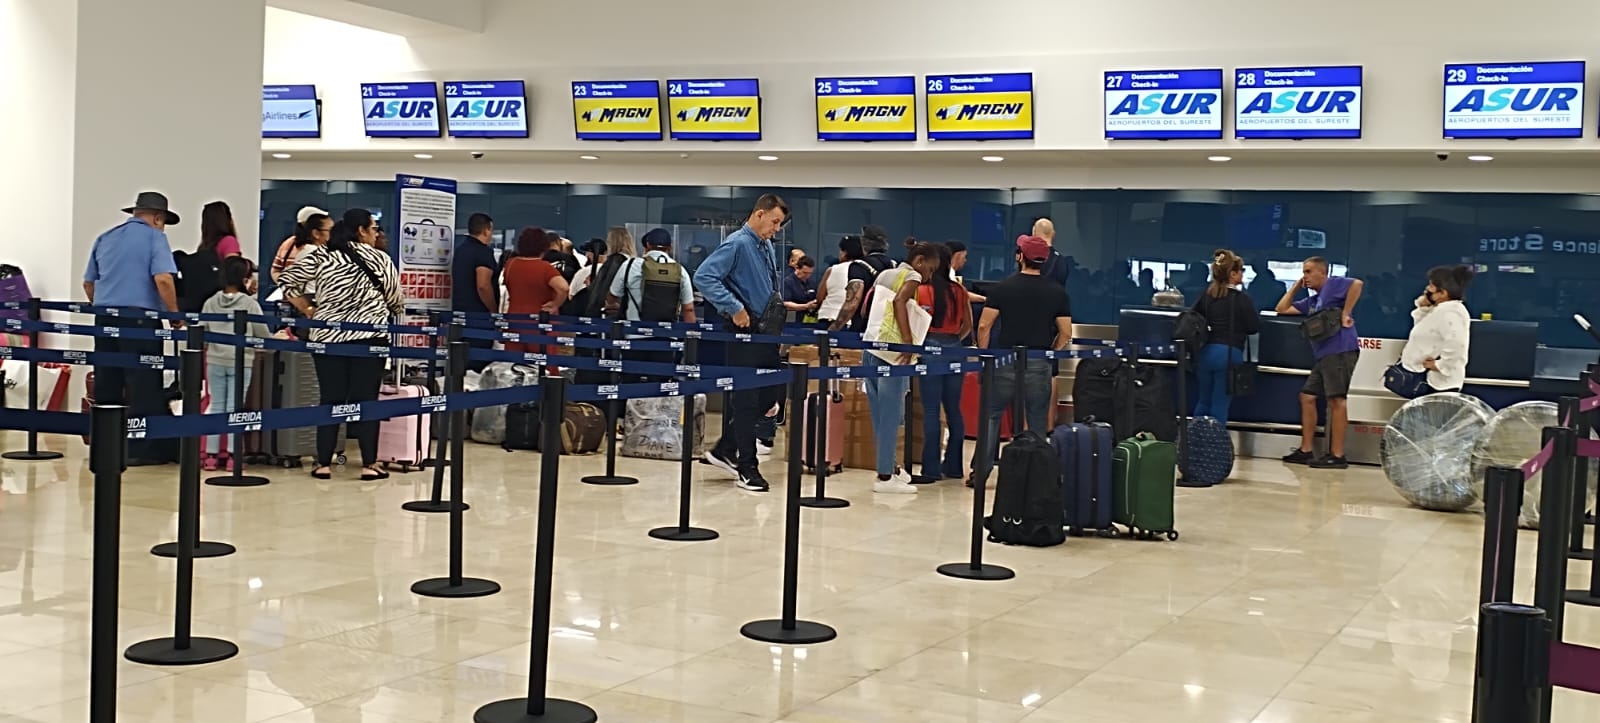 Aeroméxico canceló un vuelo de la ruta Mérida-CDMX